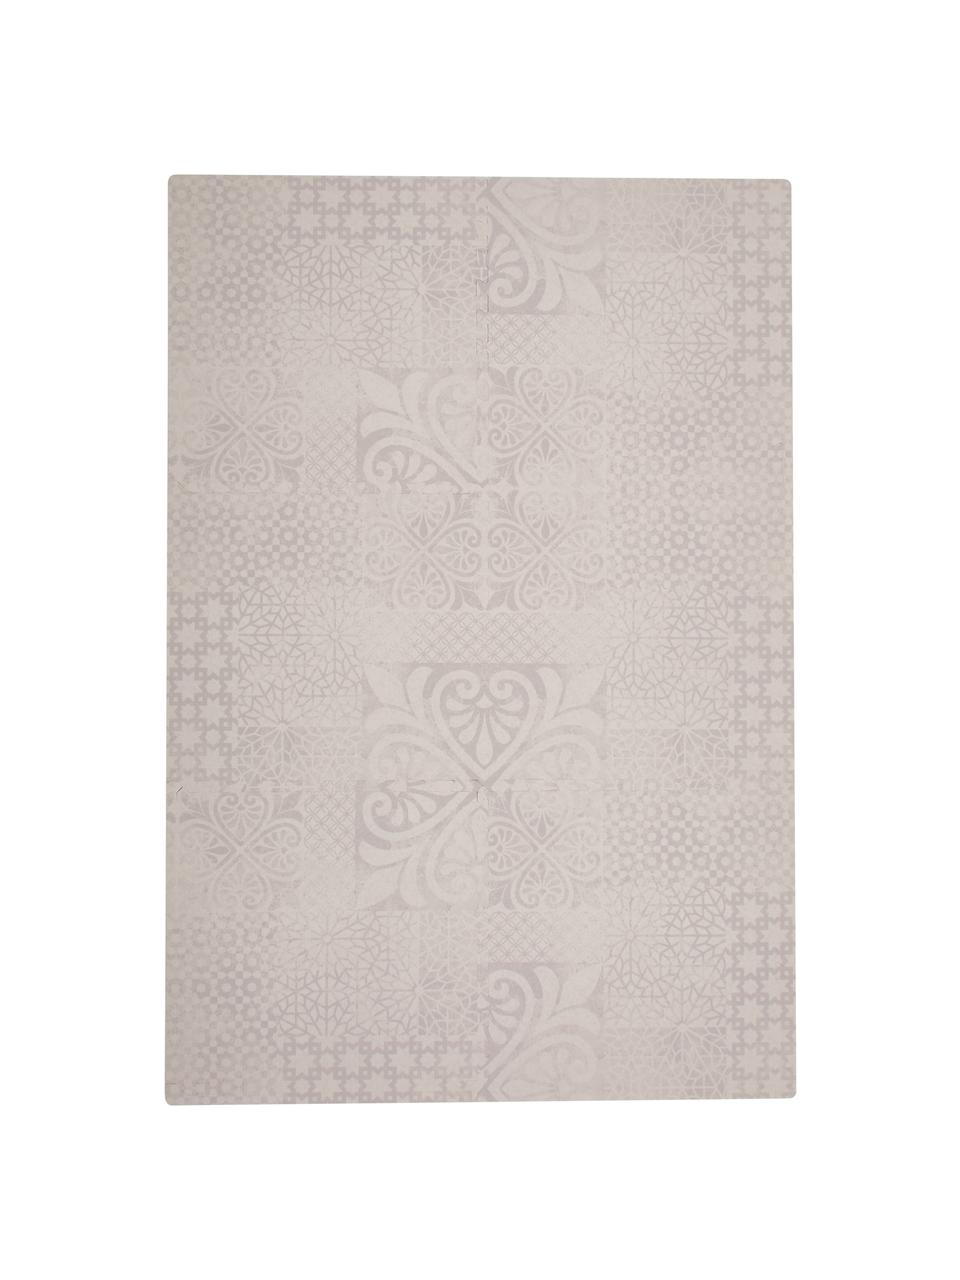 Set tappetino da gioco espandibile Tiles 18 pz, Schiuma (EVAC), priva di sostanze inquinanti, Beige, Larg. 120 x Lung. 180 cm